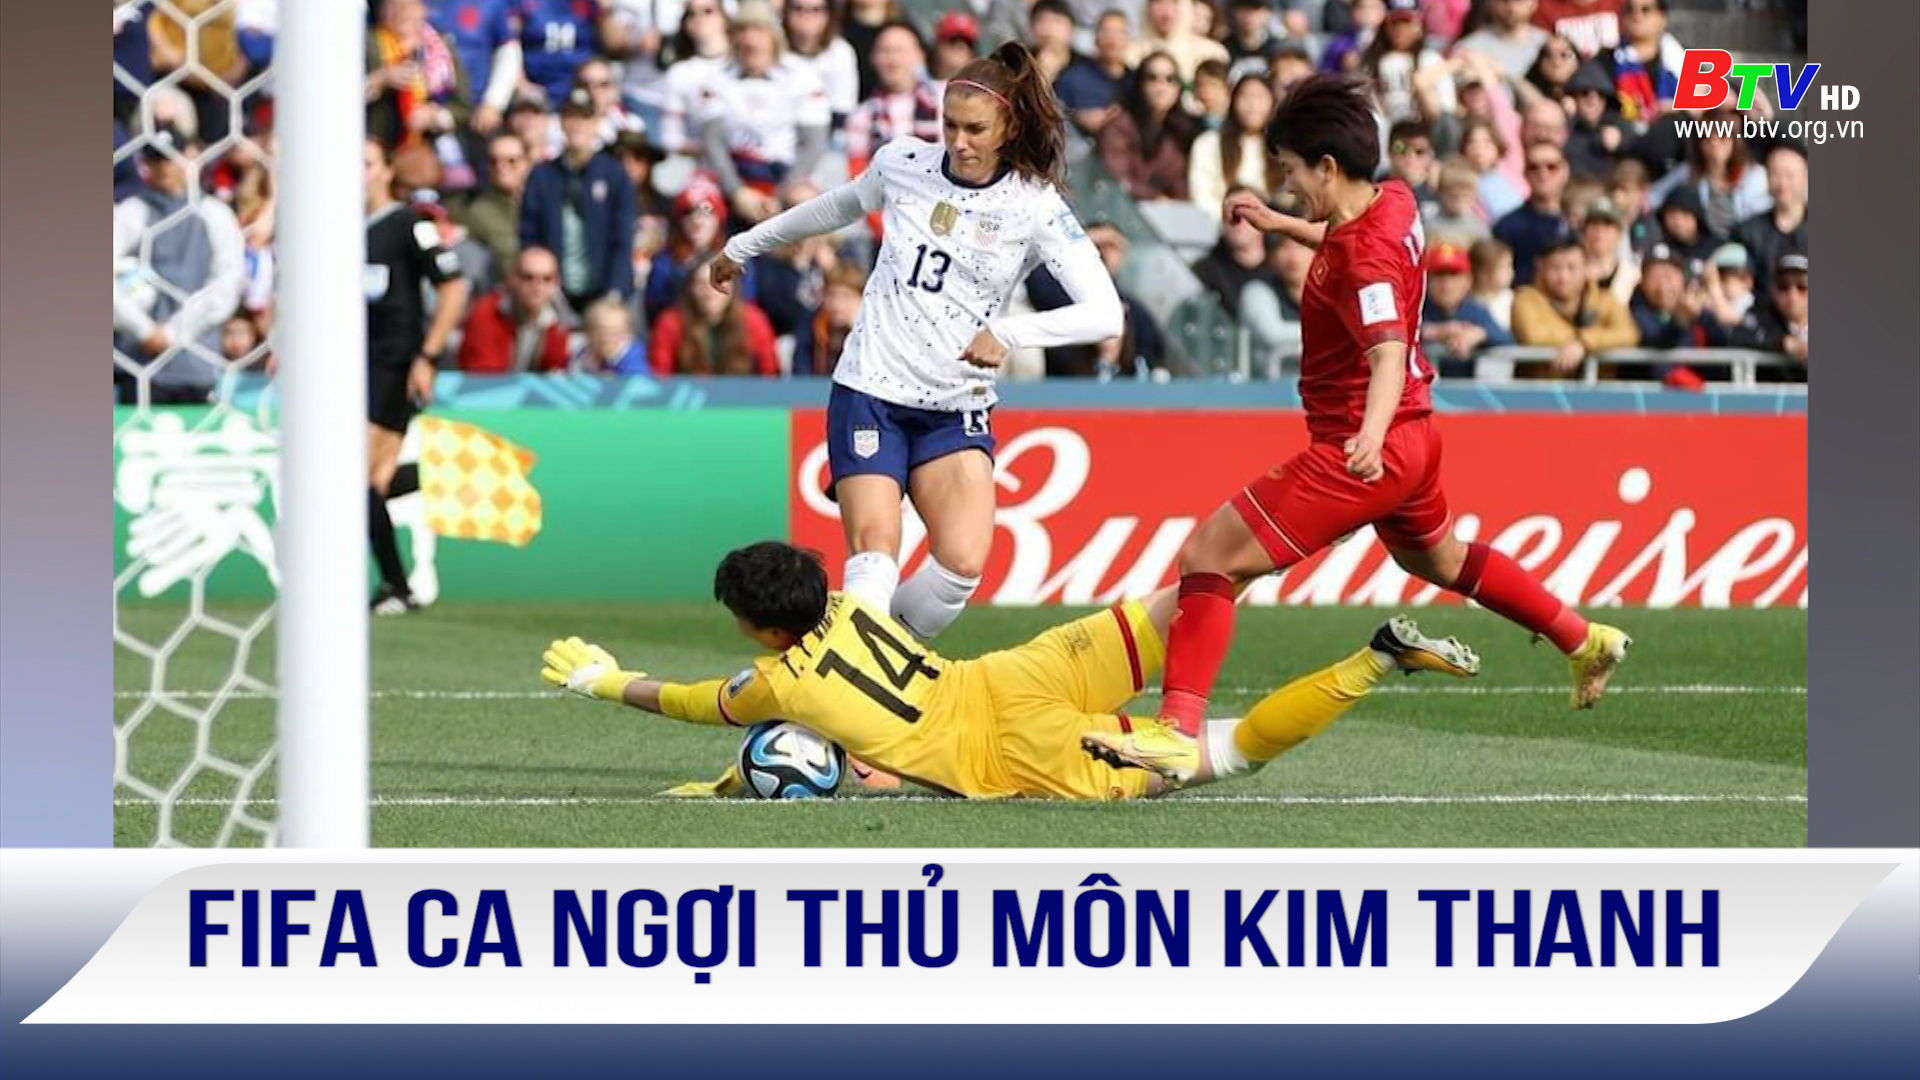 FIFA ca ngợi thủ môn Kim Thanh